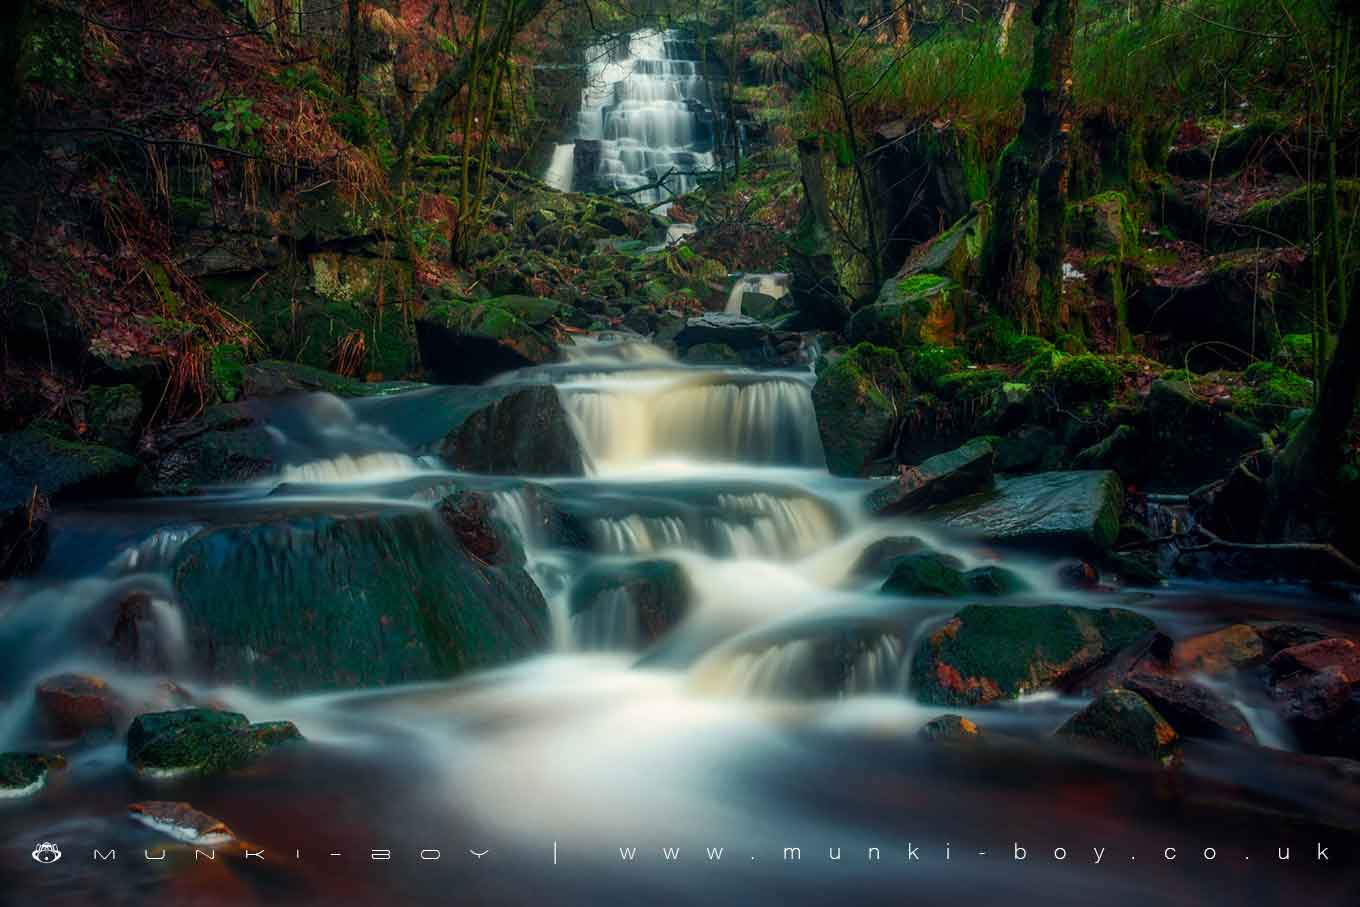 Waterfalls in Lancashire